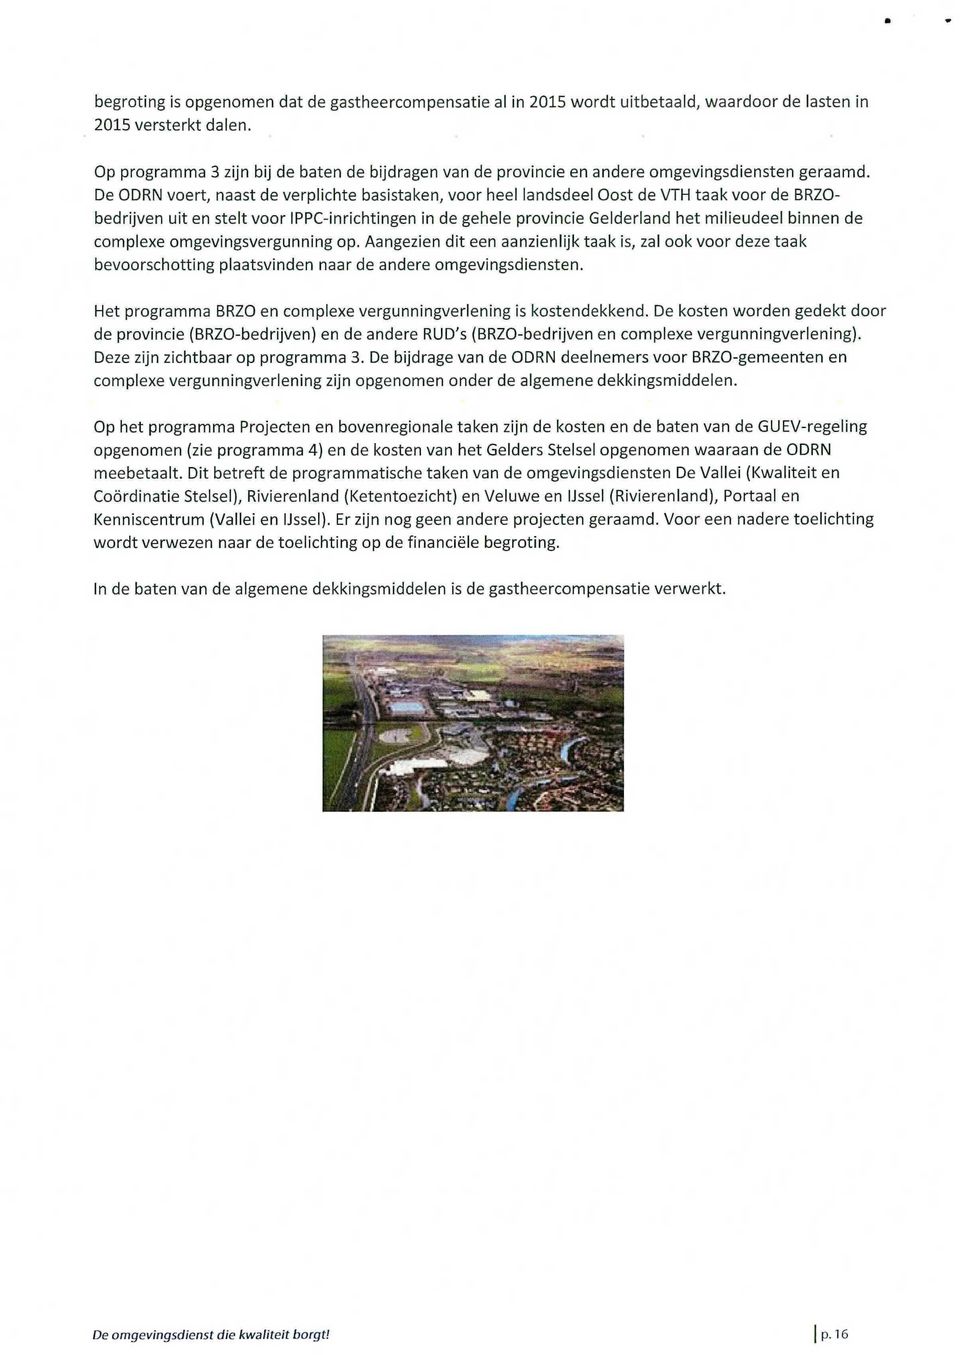 De ODRN voert, naast de verplichte basistaken, voor heel landsdeel Oost de VTH taak voor de BRZObedrijven uit en stelt voor IPPC-inrichtingen in de gehele provincie Gelderland het milieudeel binnen